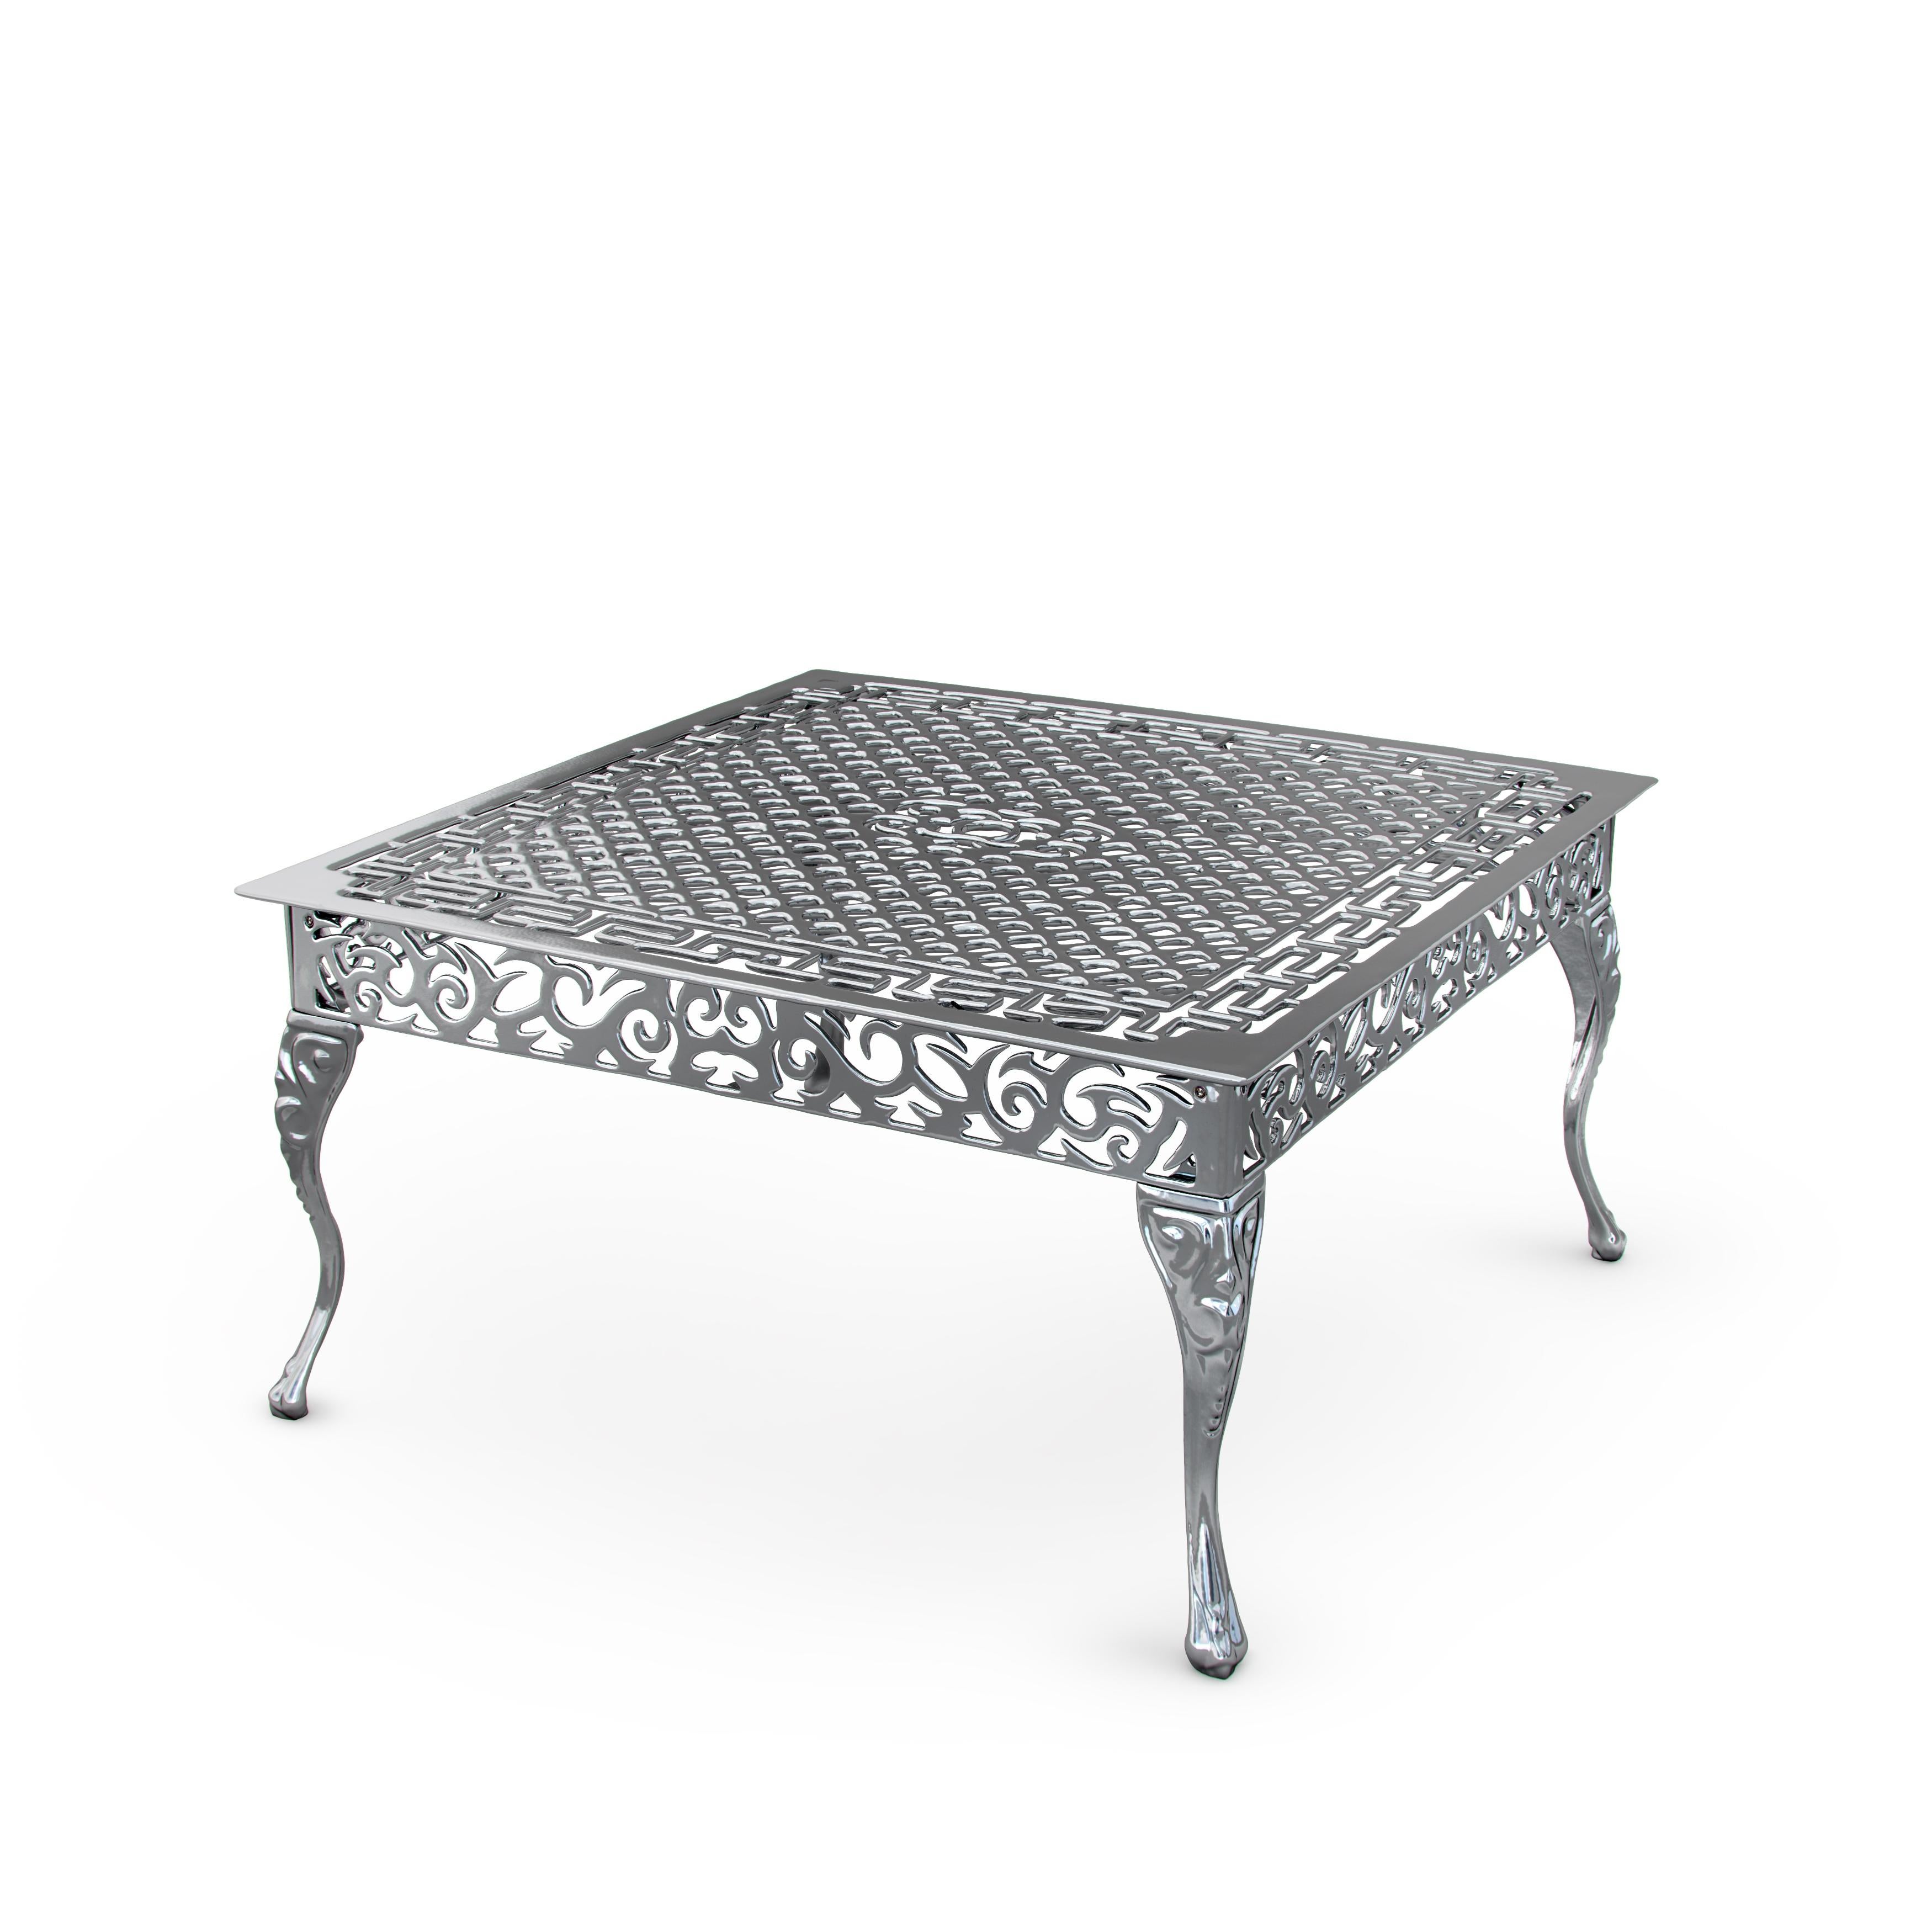 italien Table basse d'extérieur Cama en aluminium avec finition chromée, fabriquée en Italie en vente